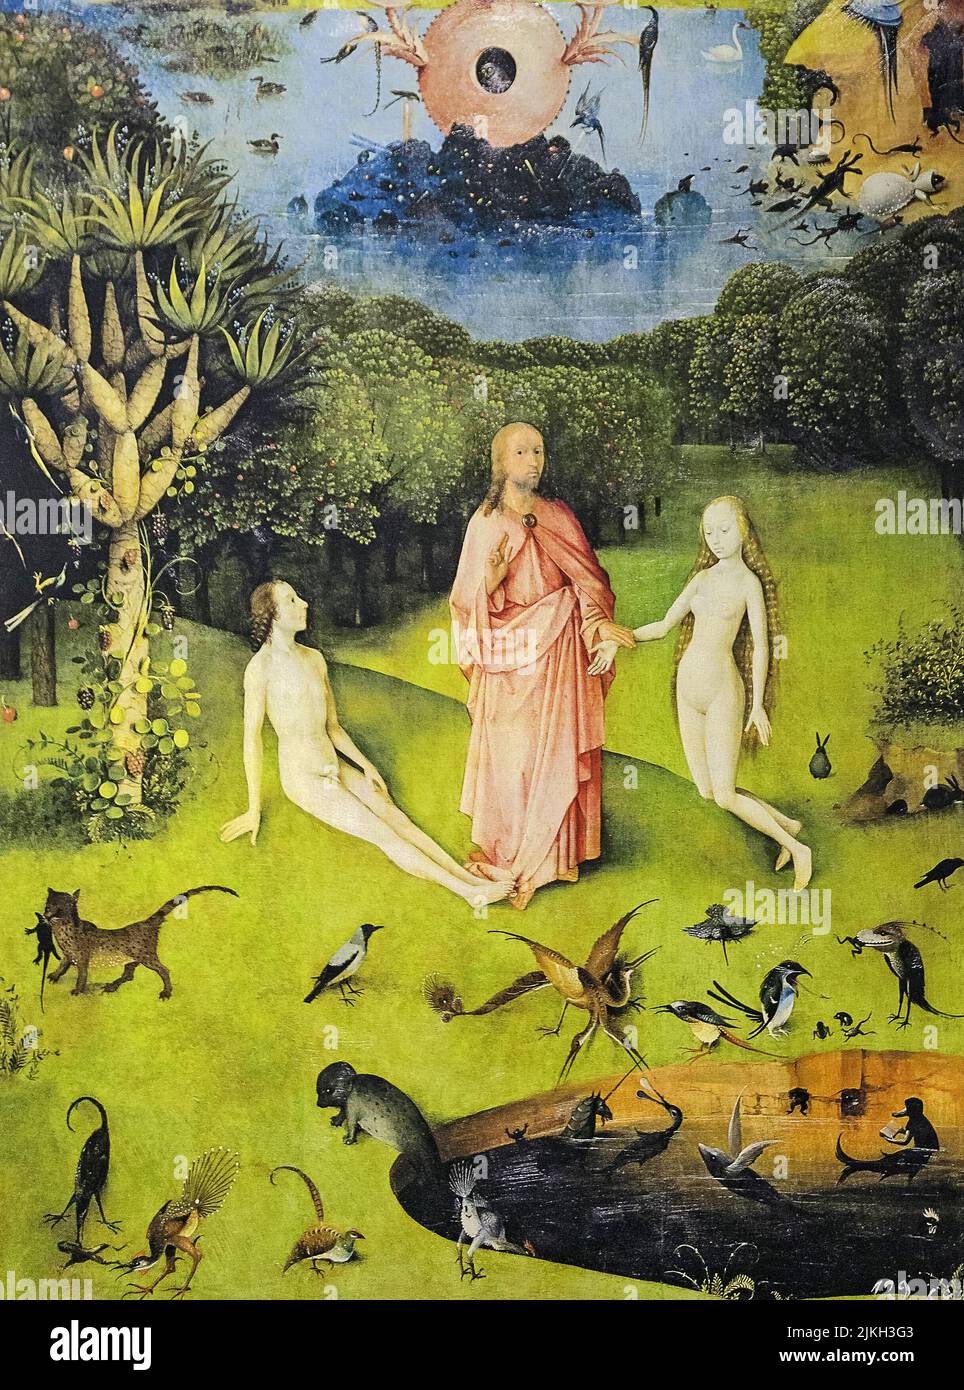 Fait partie du jardin DES DÉLICES TERRESTRES de Hieronymus Bosch, 1490-1510. Paysage de paradis fantastique. Dieu montre Adam Eve. Une variété de créatures Banque D'Images